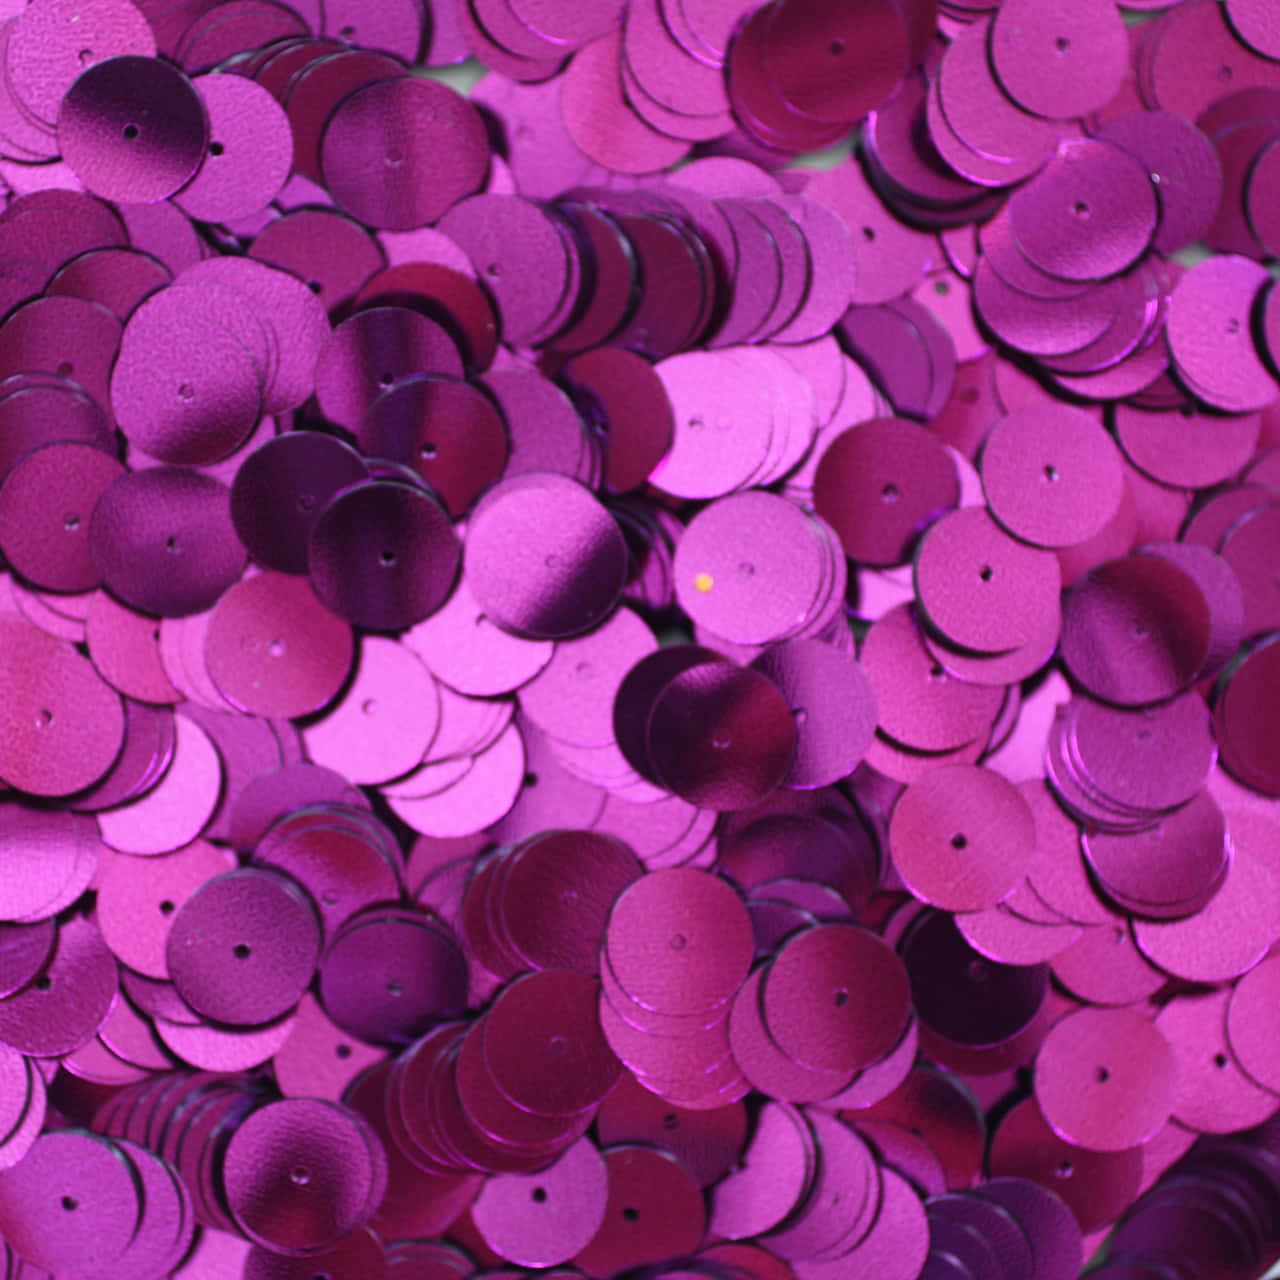 Shine Bright in Unique Purple Sequins Wallpaper